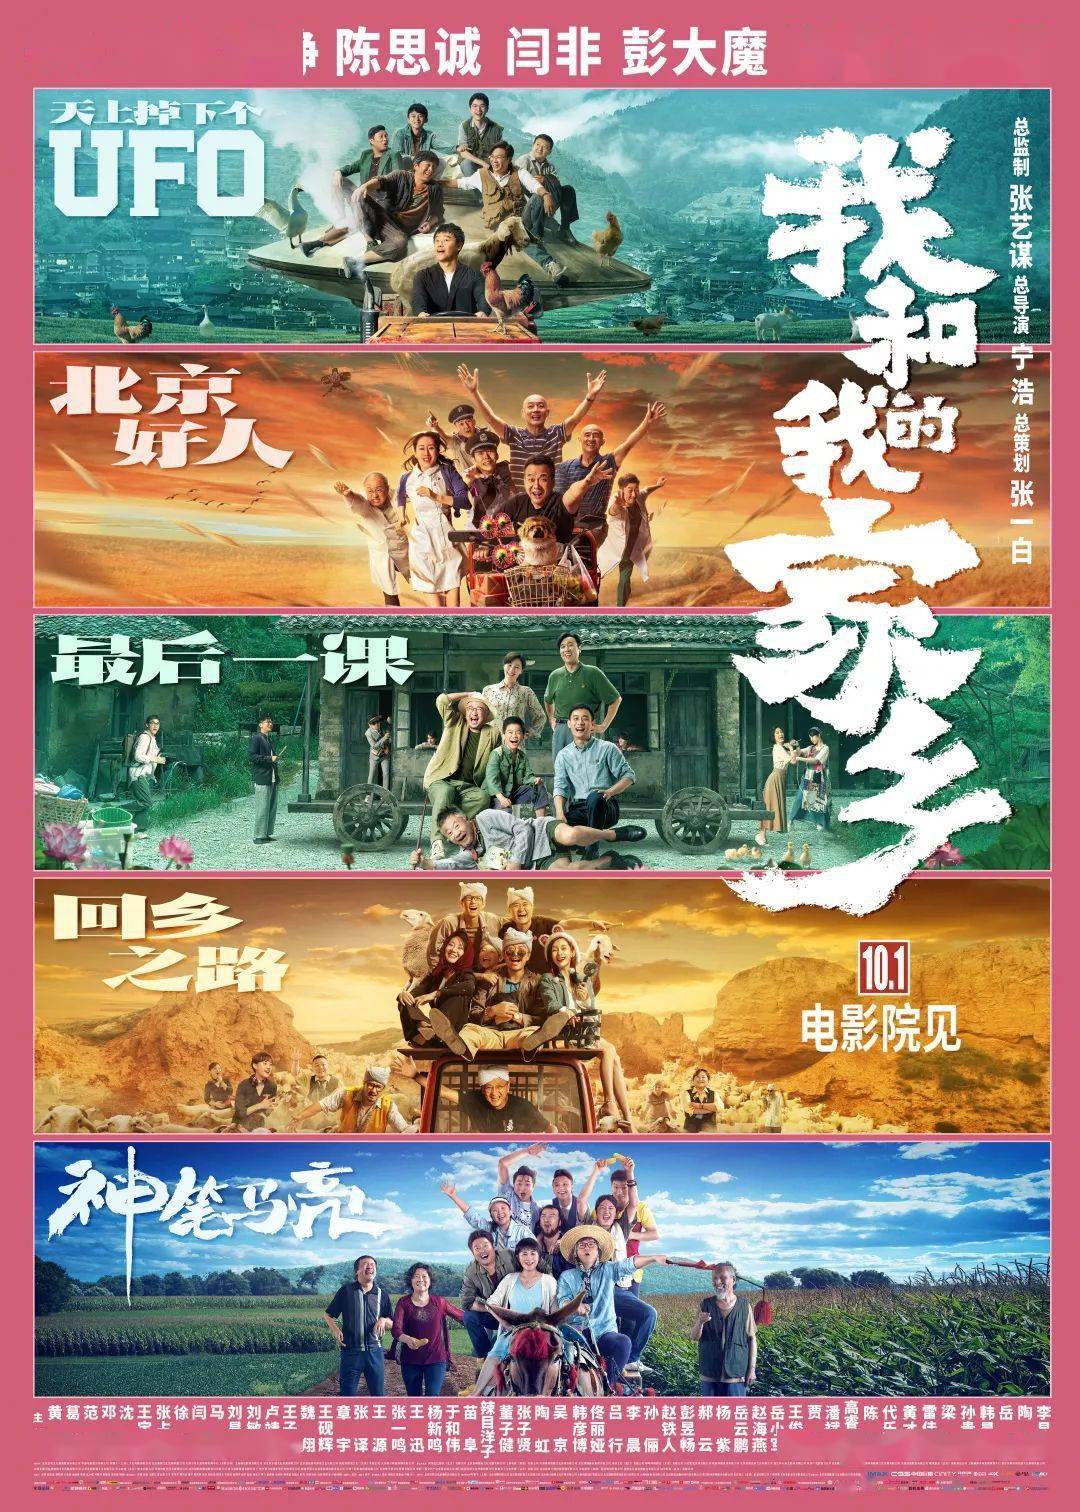 海报 资料图片   【文艺观潮】   2020年对于中国和中国电影而言,都是